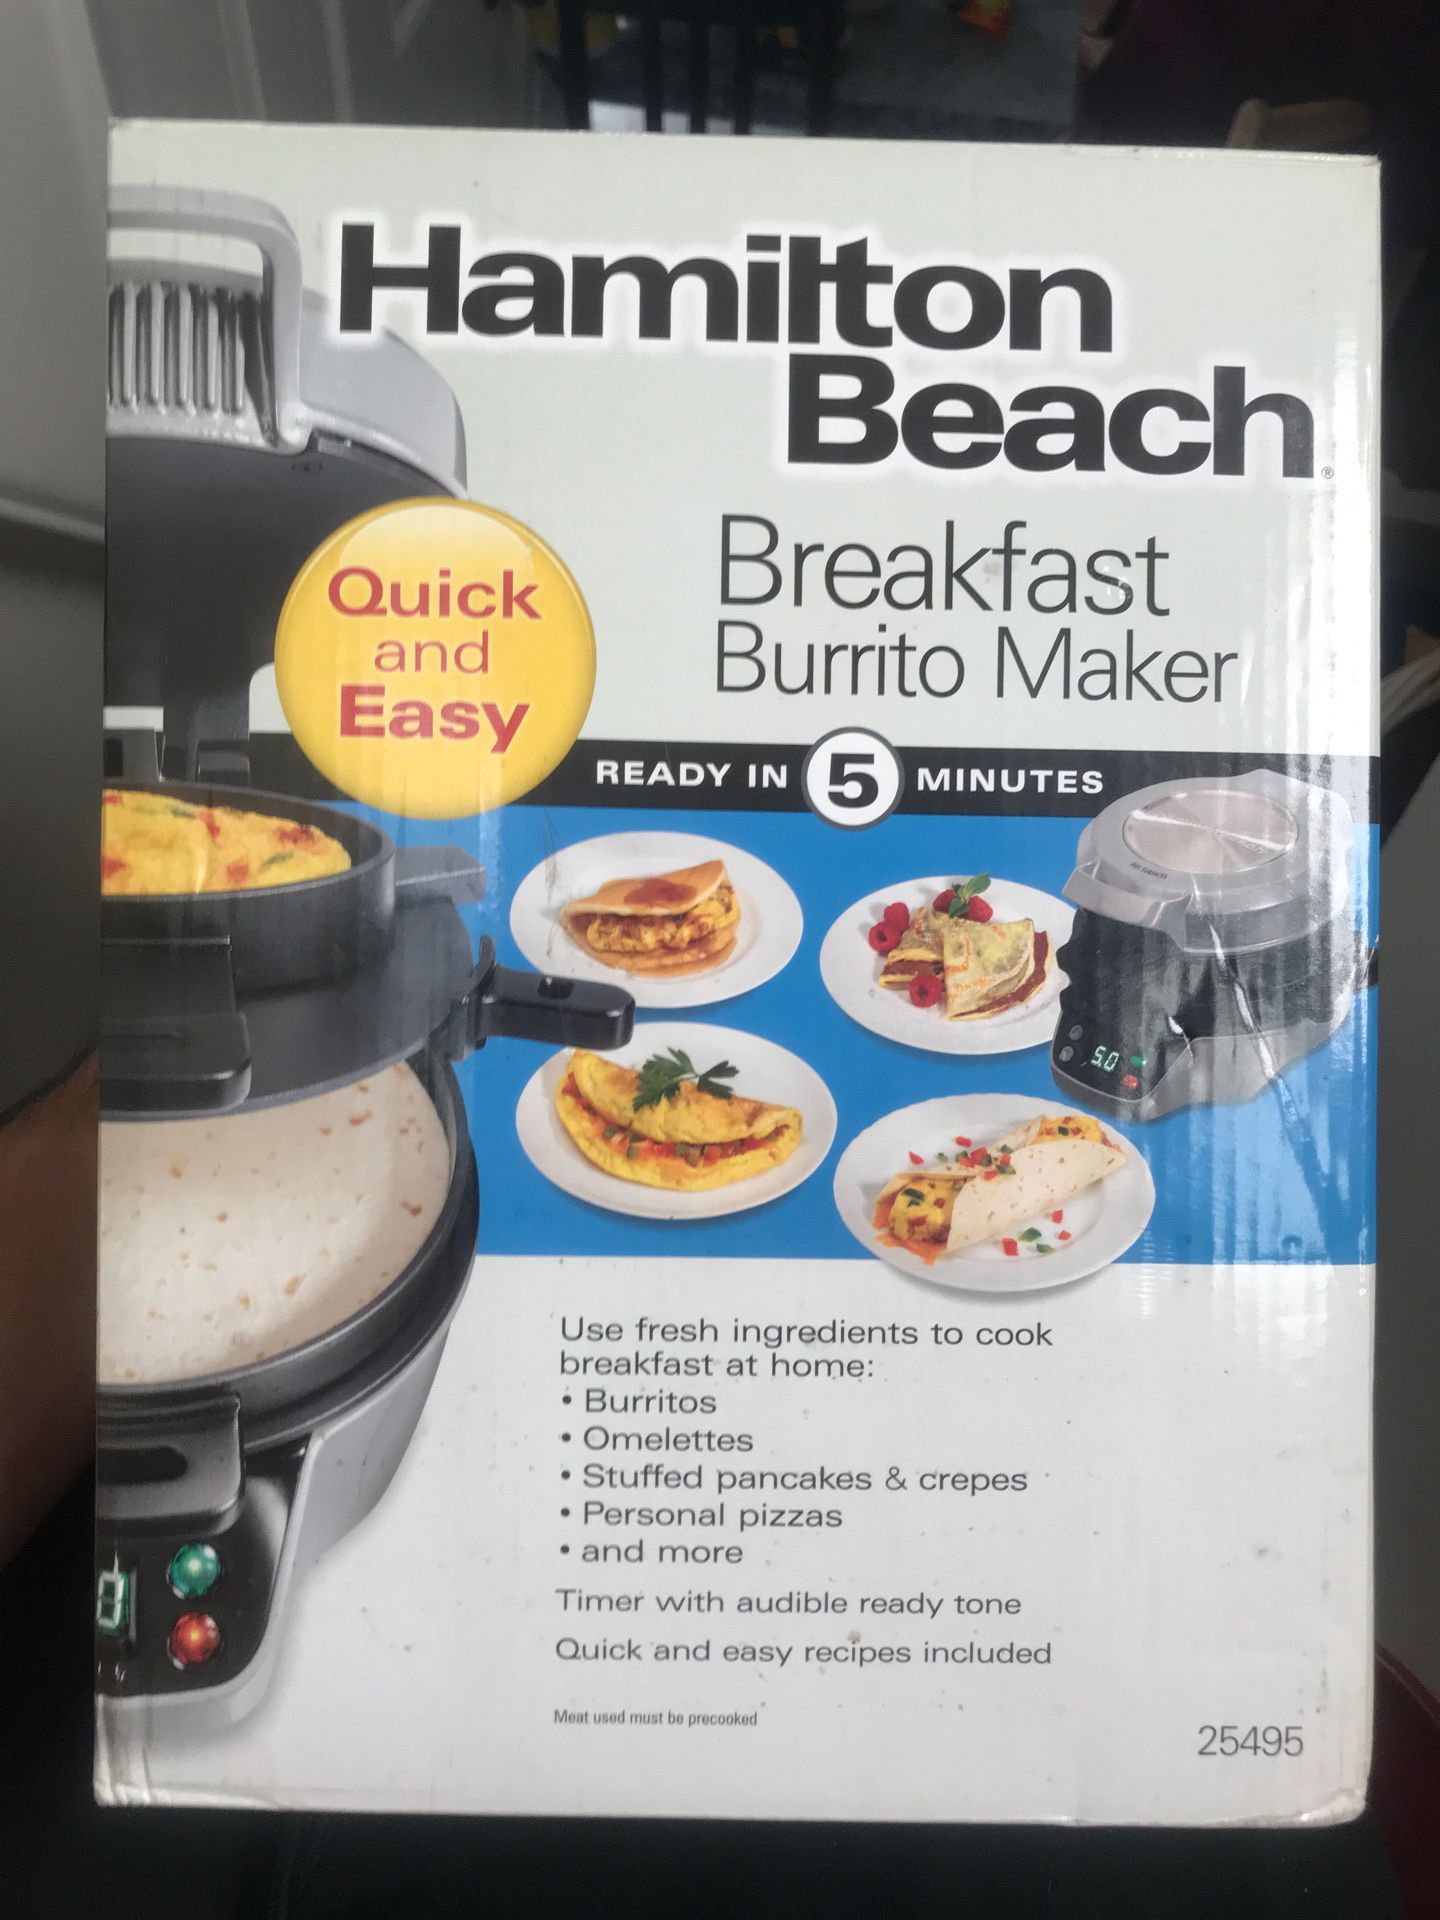 Hamilton beach breakfast burrito maker for Sale in Redwood City, CA -  OfferUp